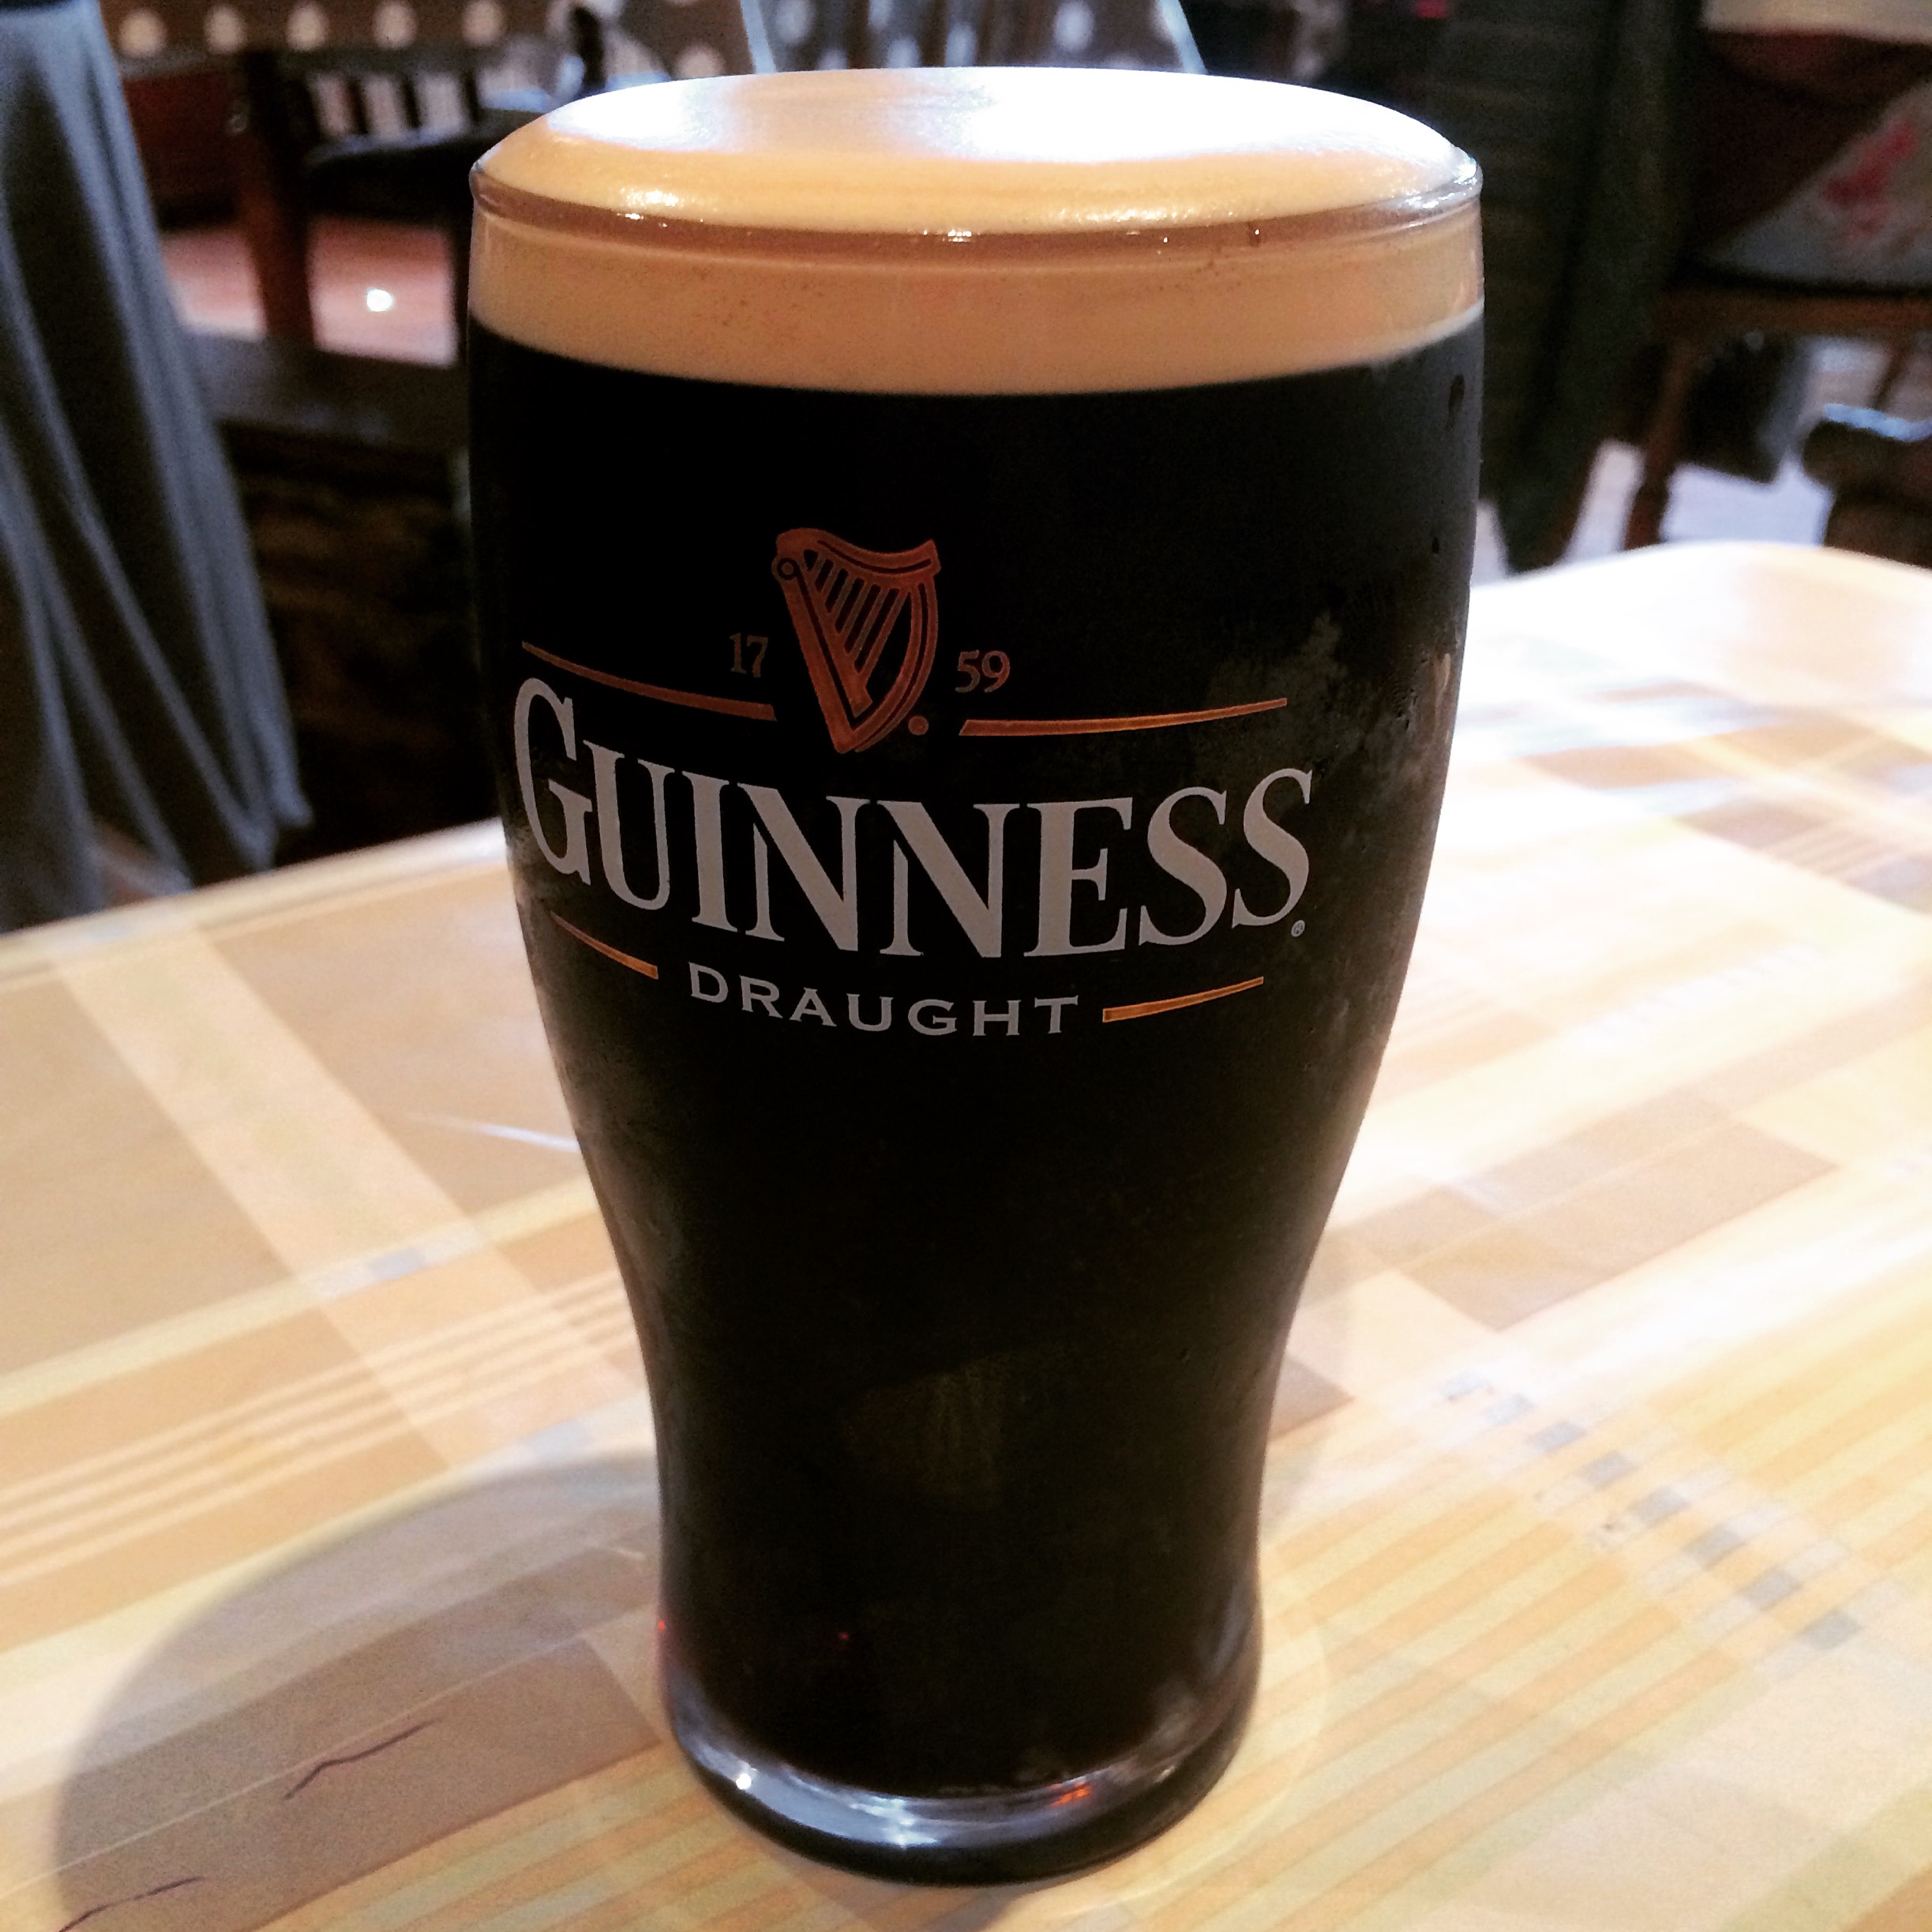 Guinness beer in Ireland